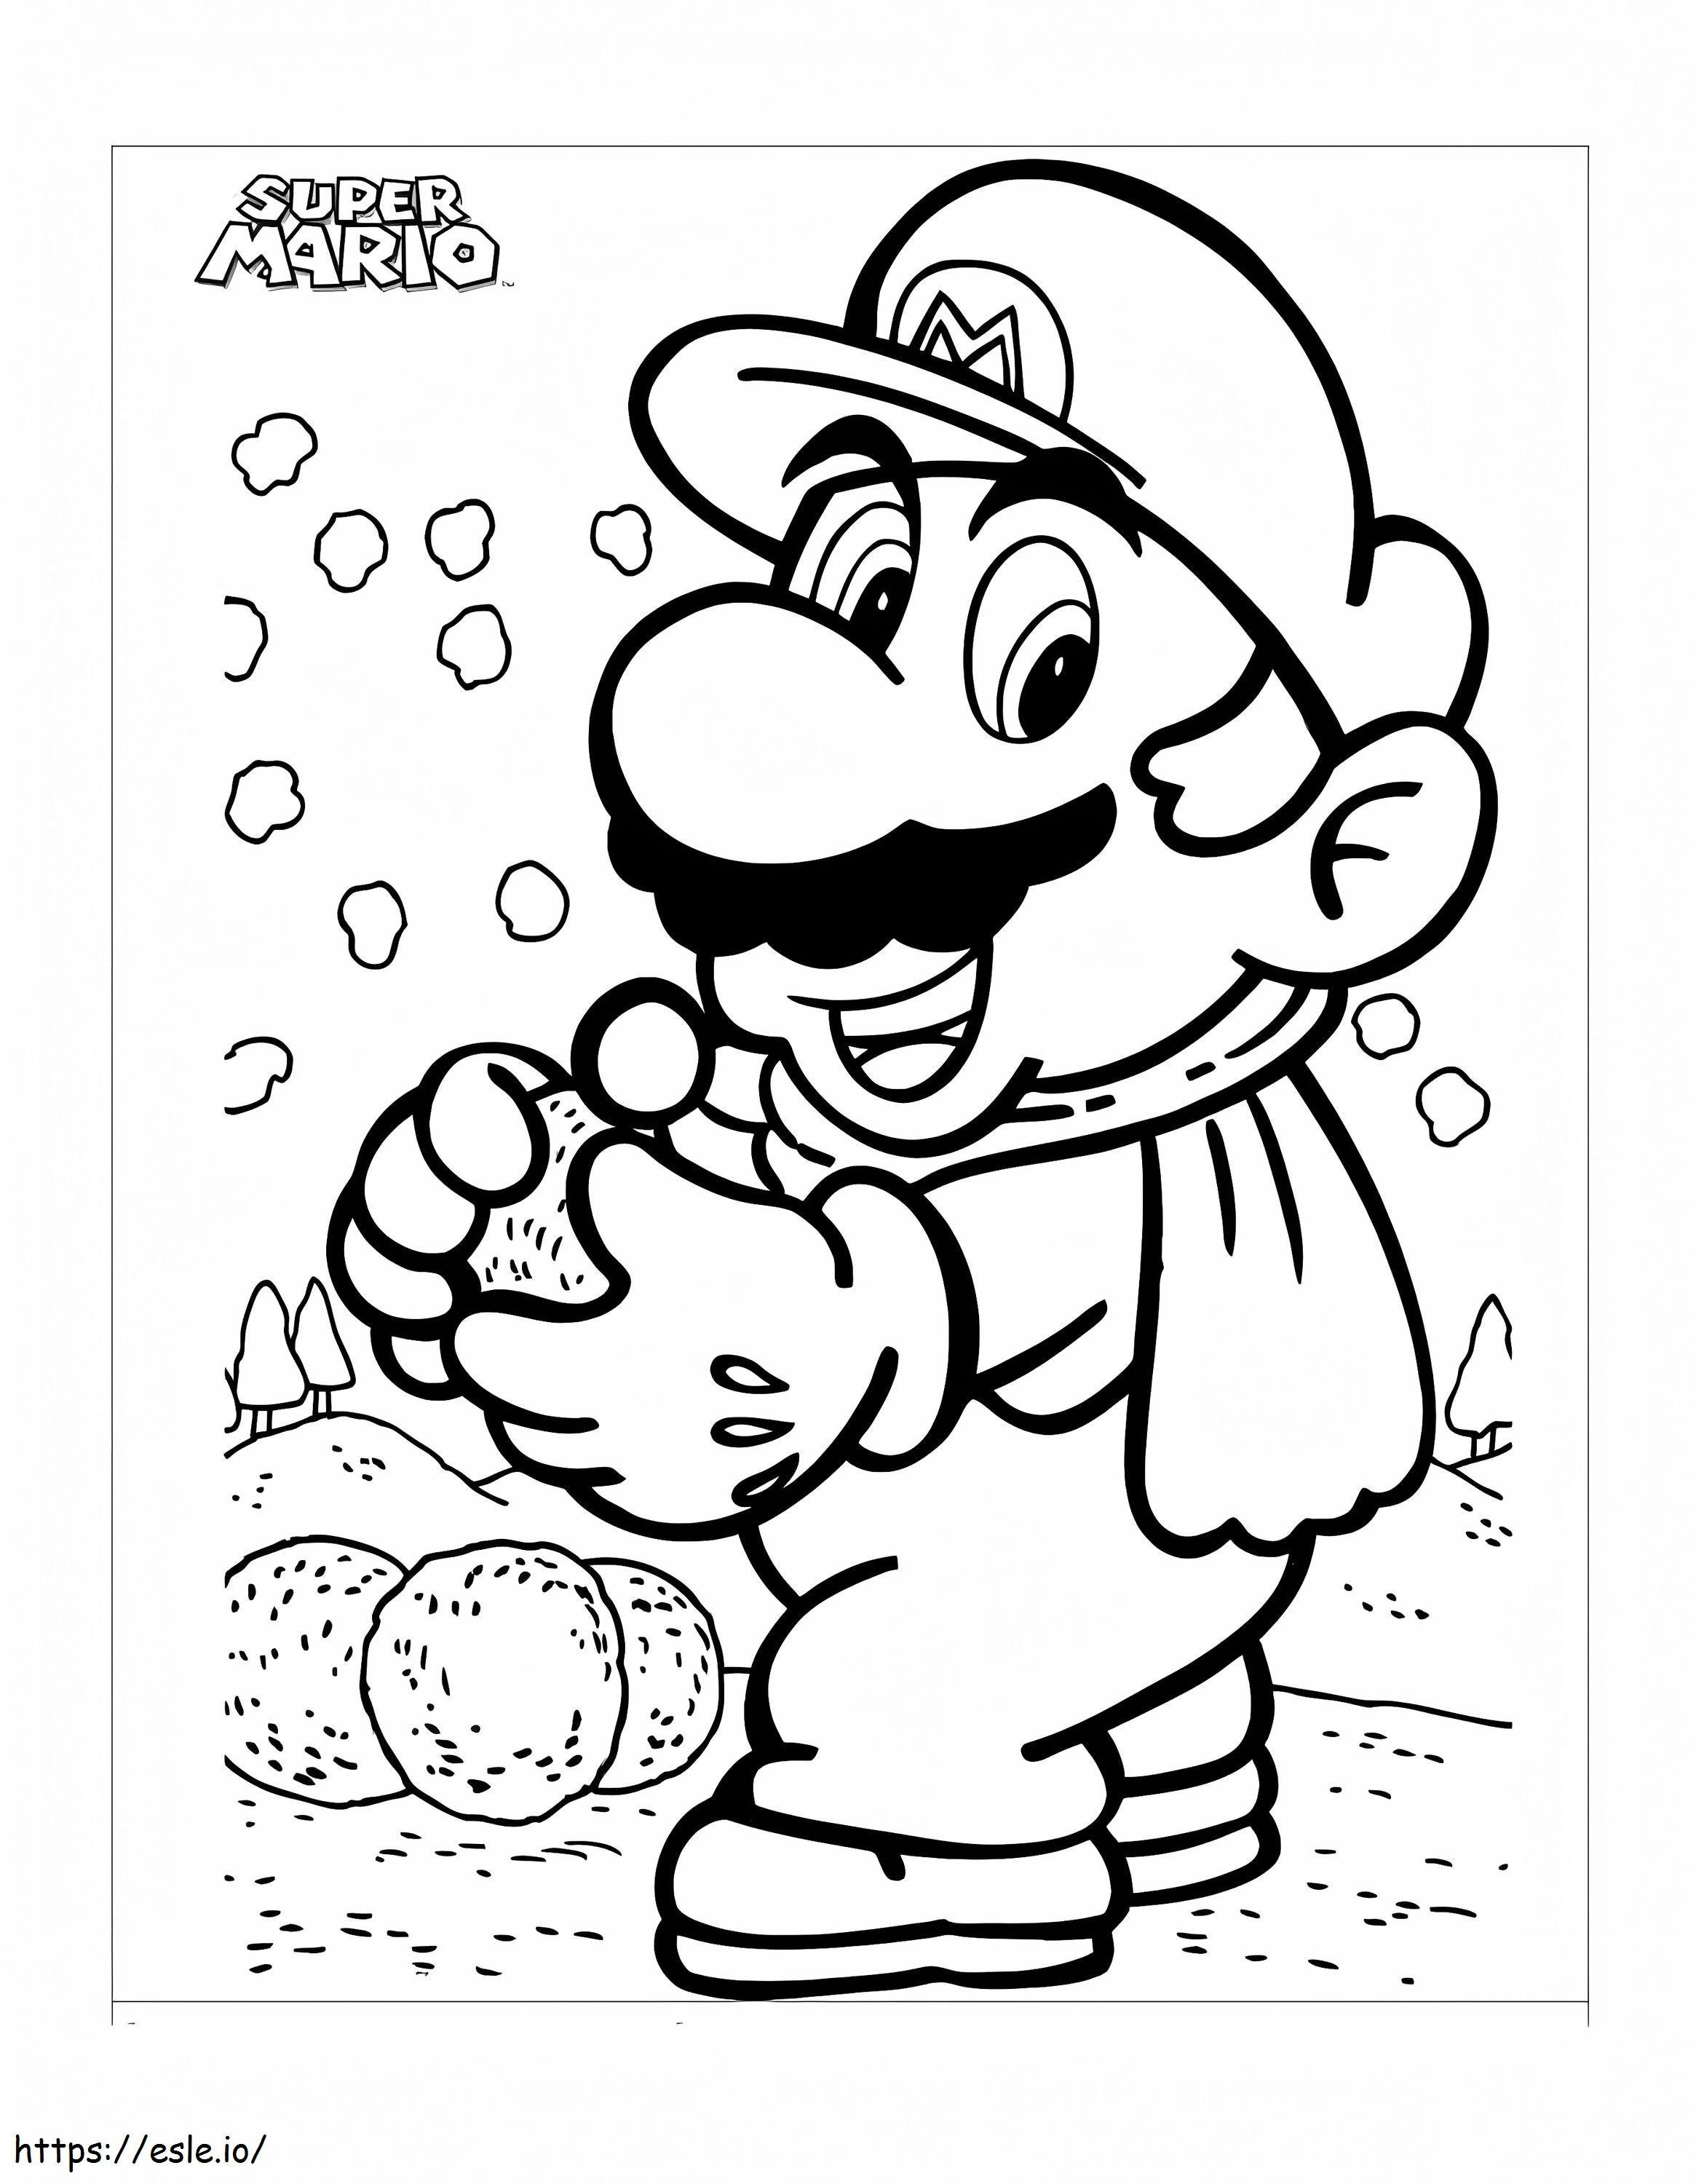 Mario z śnieżkami kolorowanka